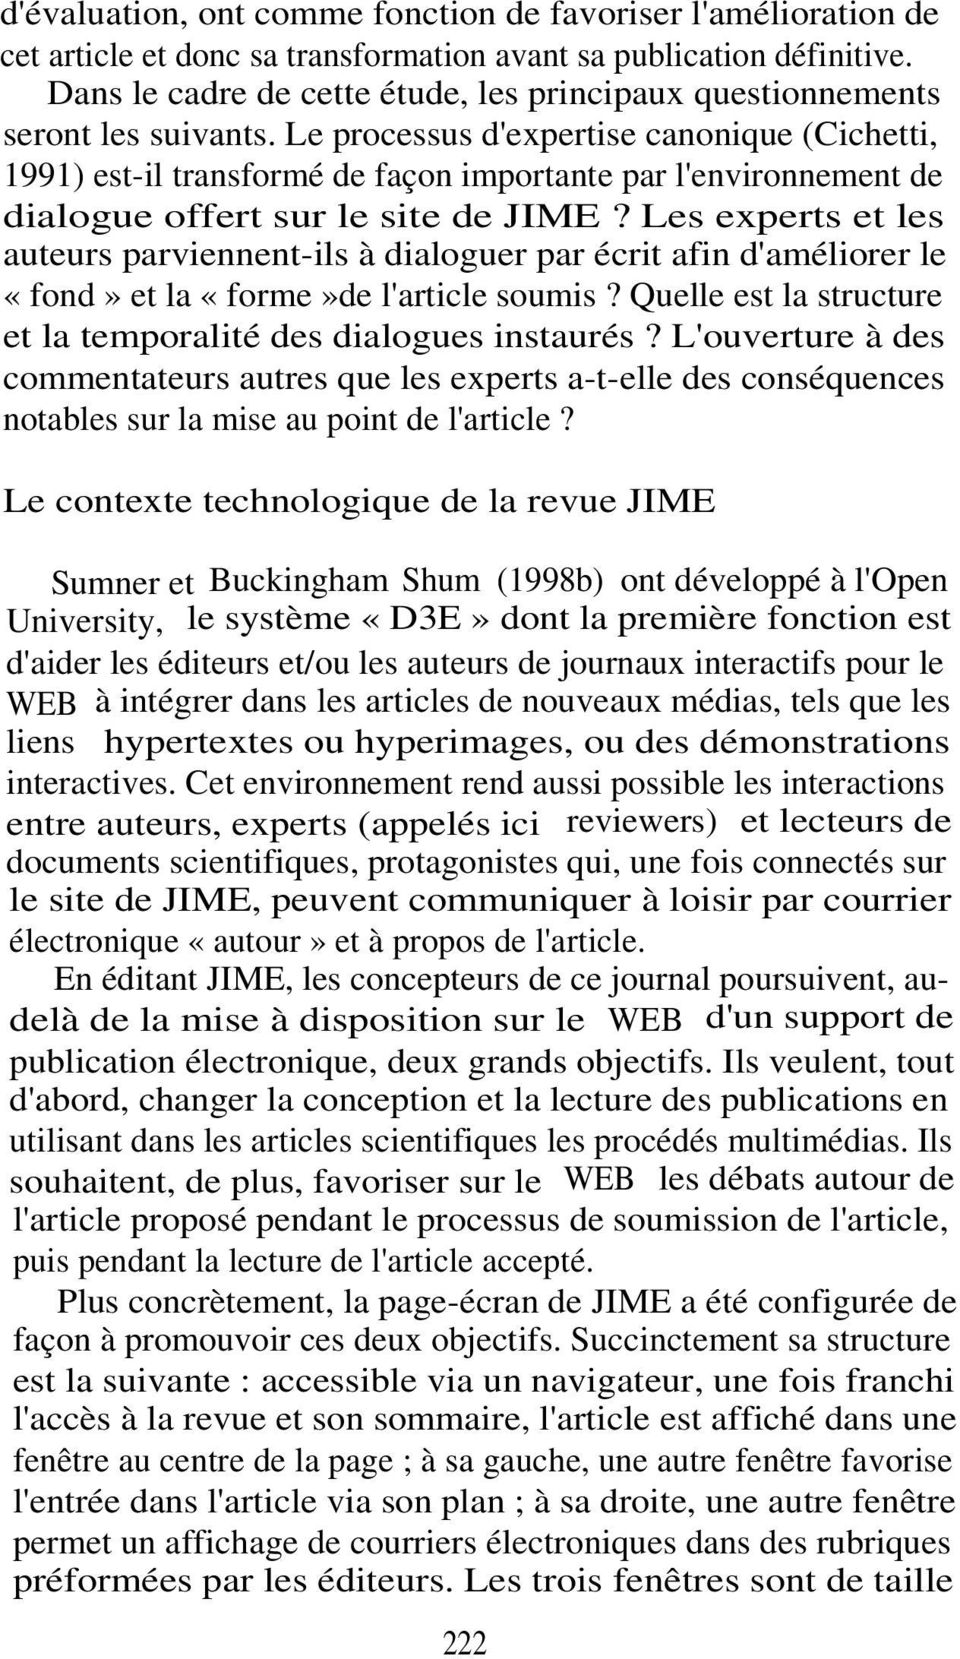 Le processus d'expertise canonique (Cichetti, 1991) est-il transformé de façon importante par l'environnement de dialogue offert sur le site de JIME?